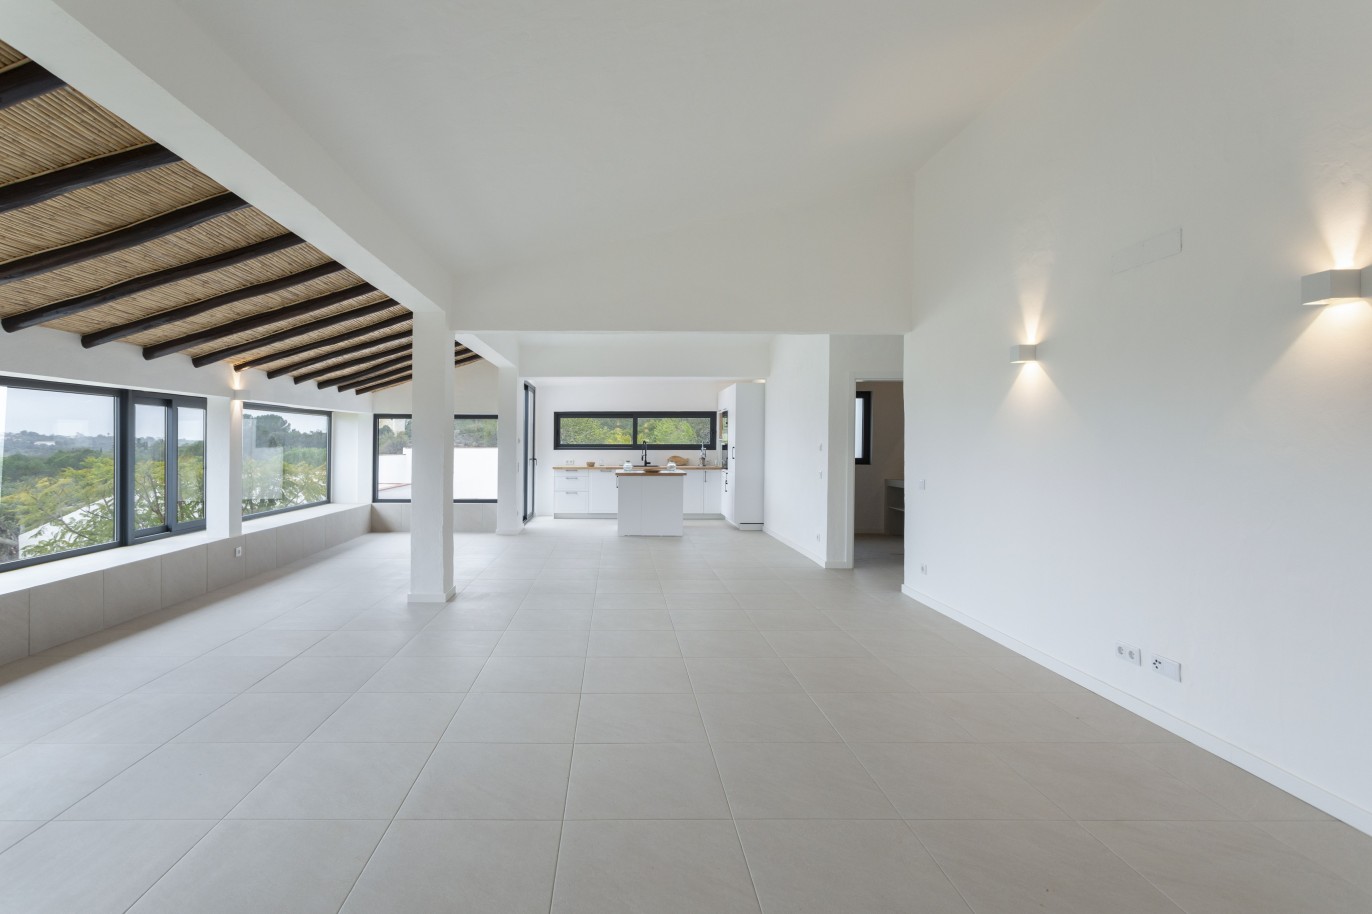 3 bedroom villa with sea view and pool, for sale in Santa Barbara, Algarve_245043